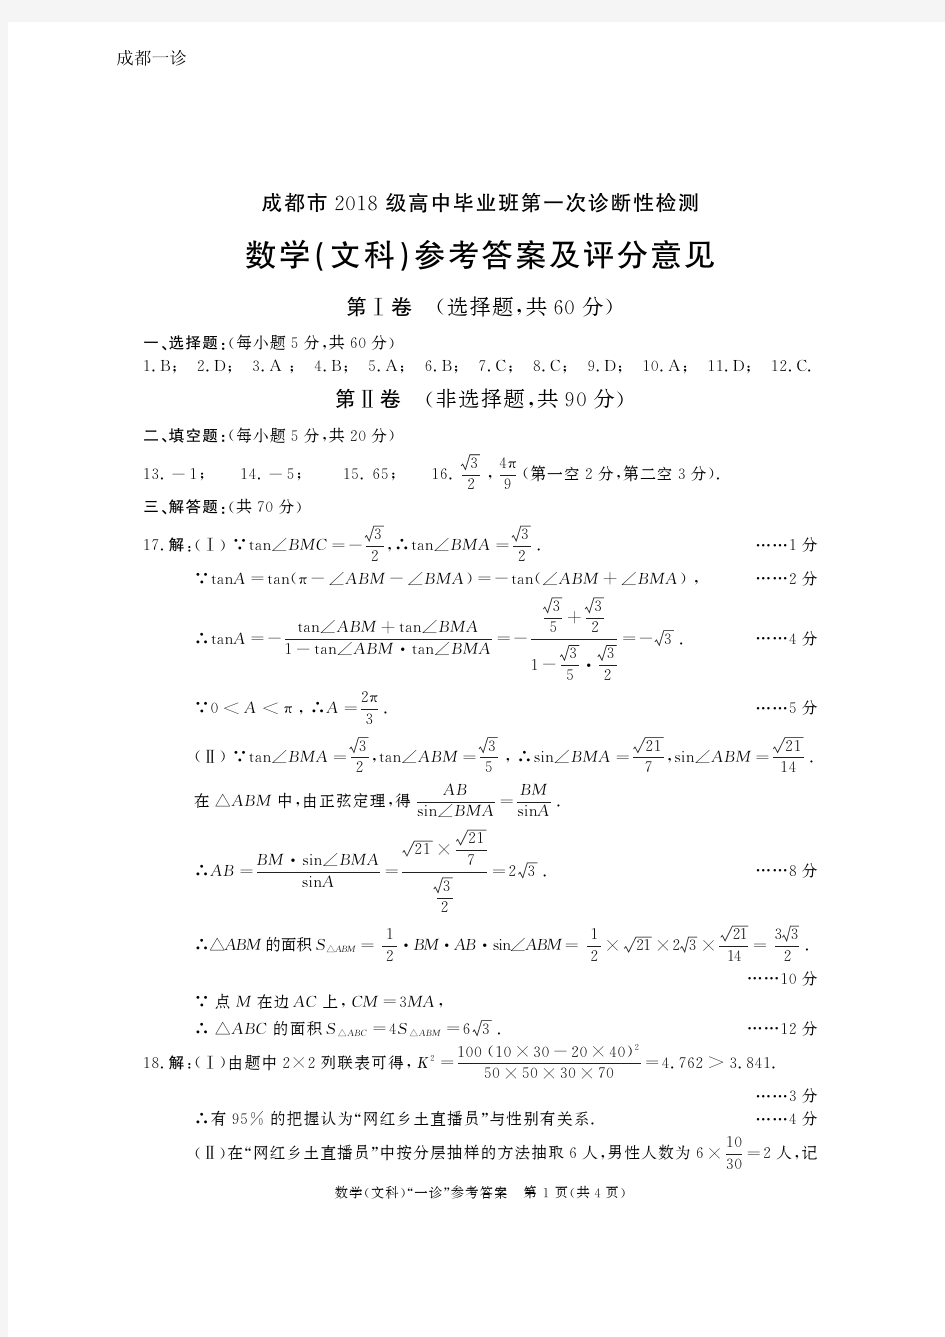 2020年12月27日四川省成都市高2021届高2018级成都一诊文科数学参考答案